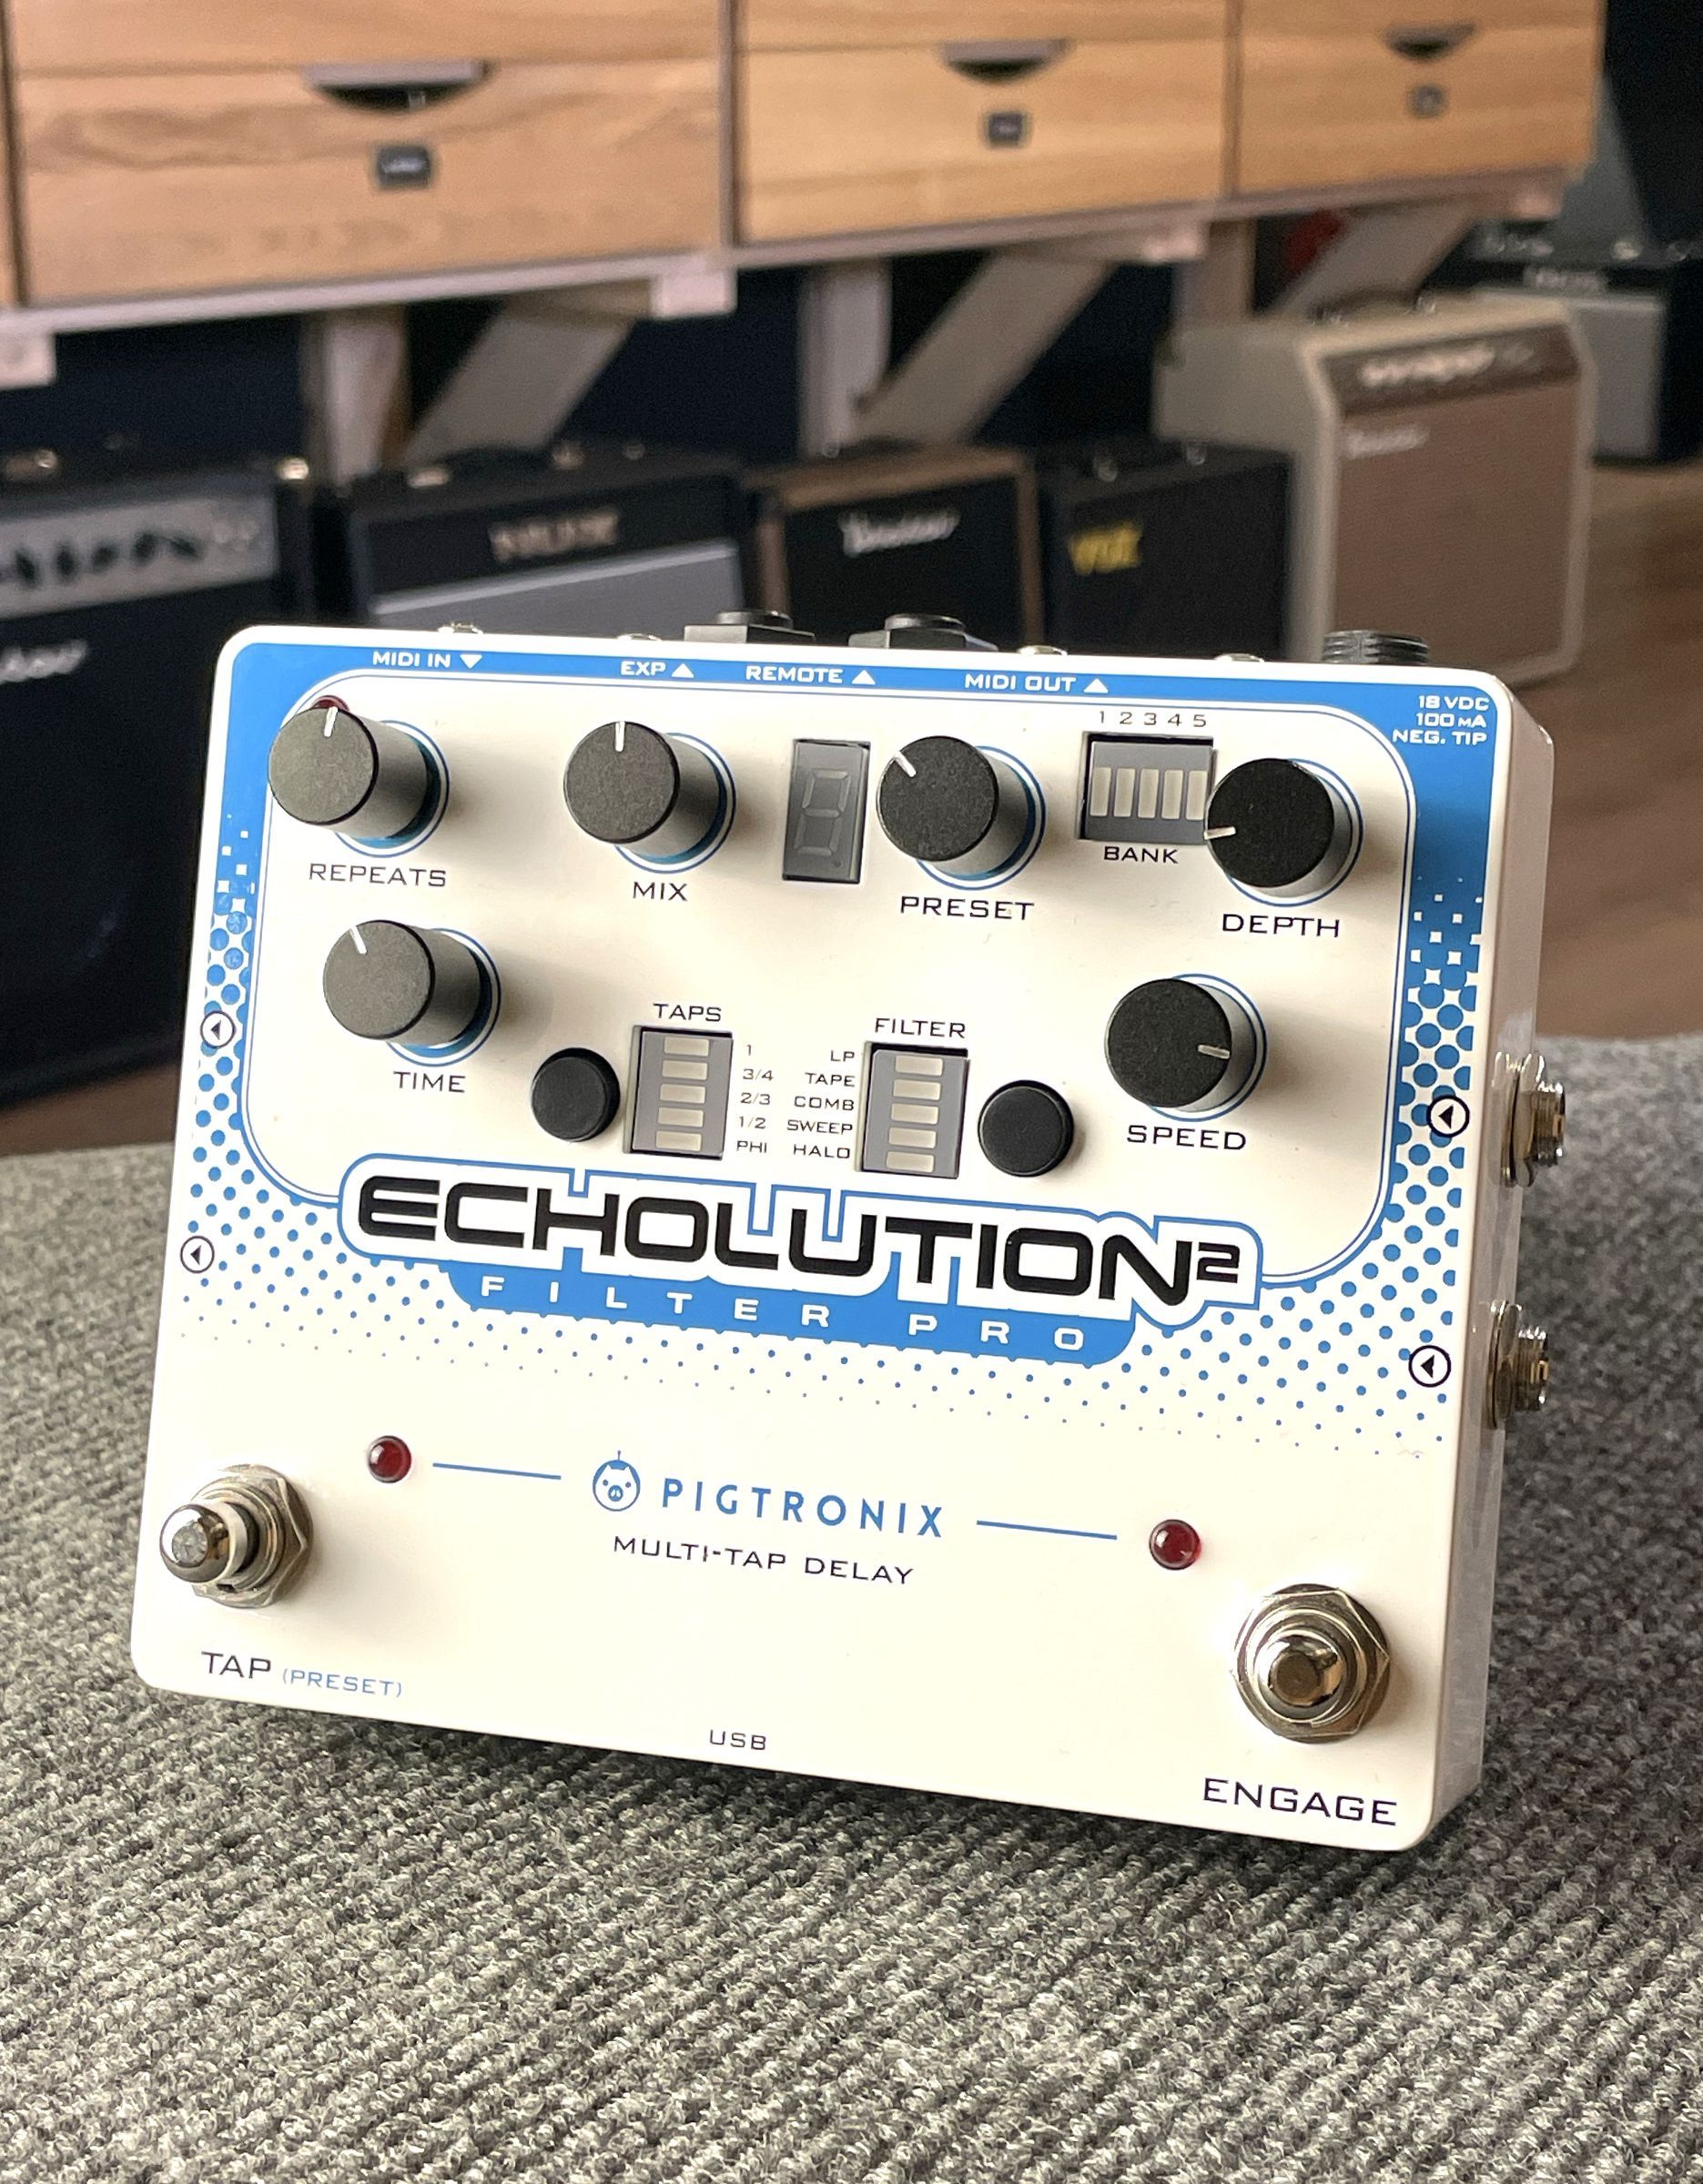 Гитарная педаль Pigtronix E2F Echolution 2 Filter Pro Delay - купить в "Гитарном Клубе"